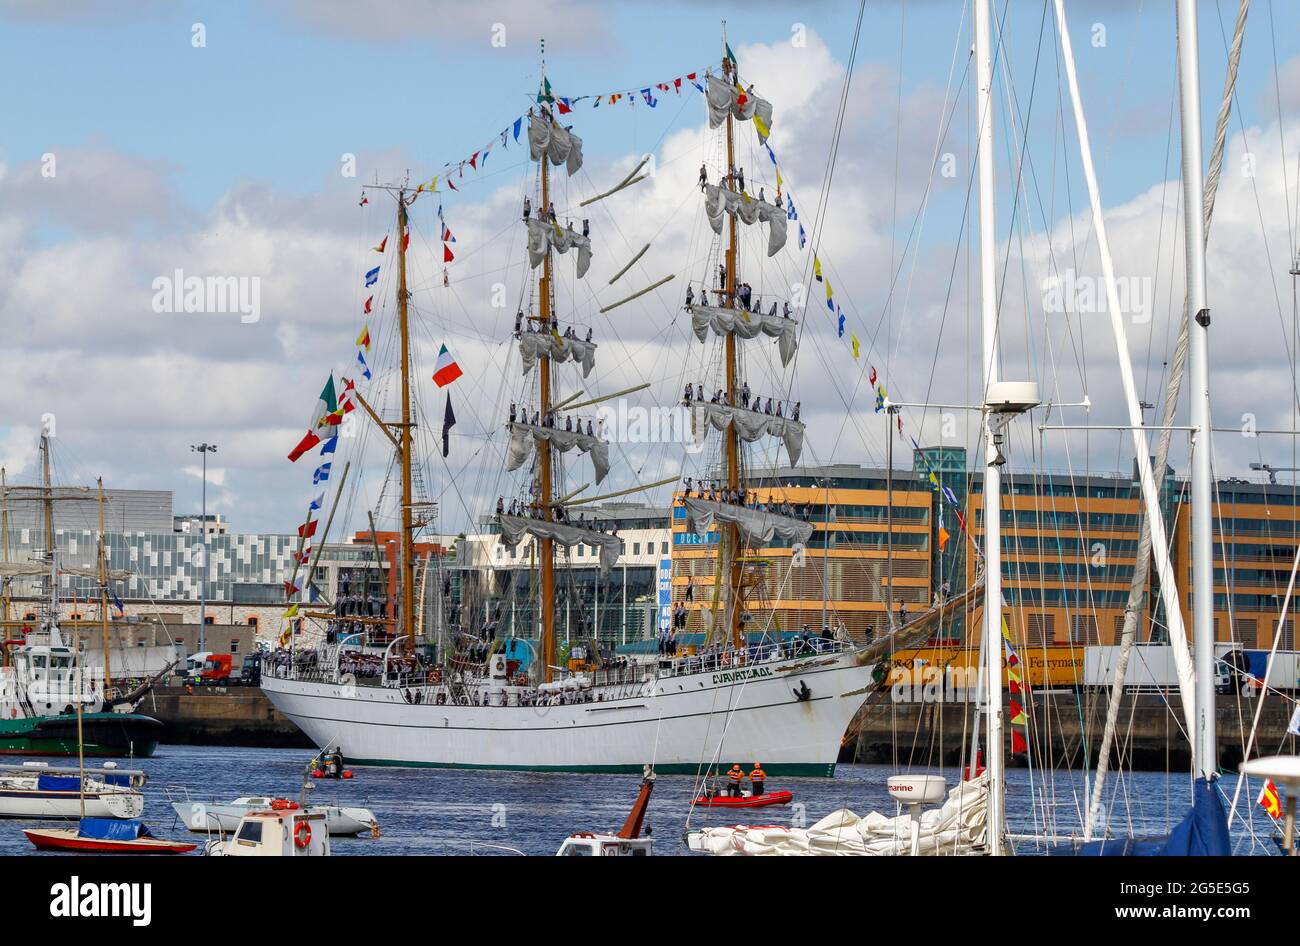 Tall Ship 'Cuauhtémoc' oder 'Cvavatemoc', traditionelles Segelschiff der mexikanischen Marine, mit Seglern auf Masten. Tall Ships Festival, Flottille auf dem Fluss Liffey Stockfoto